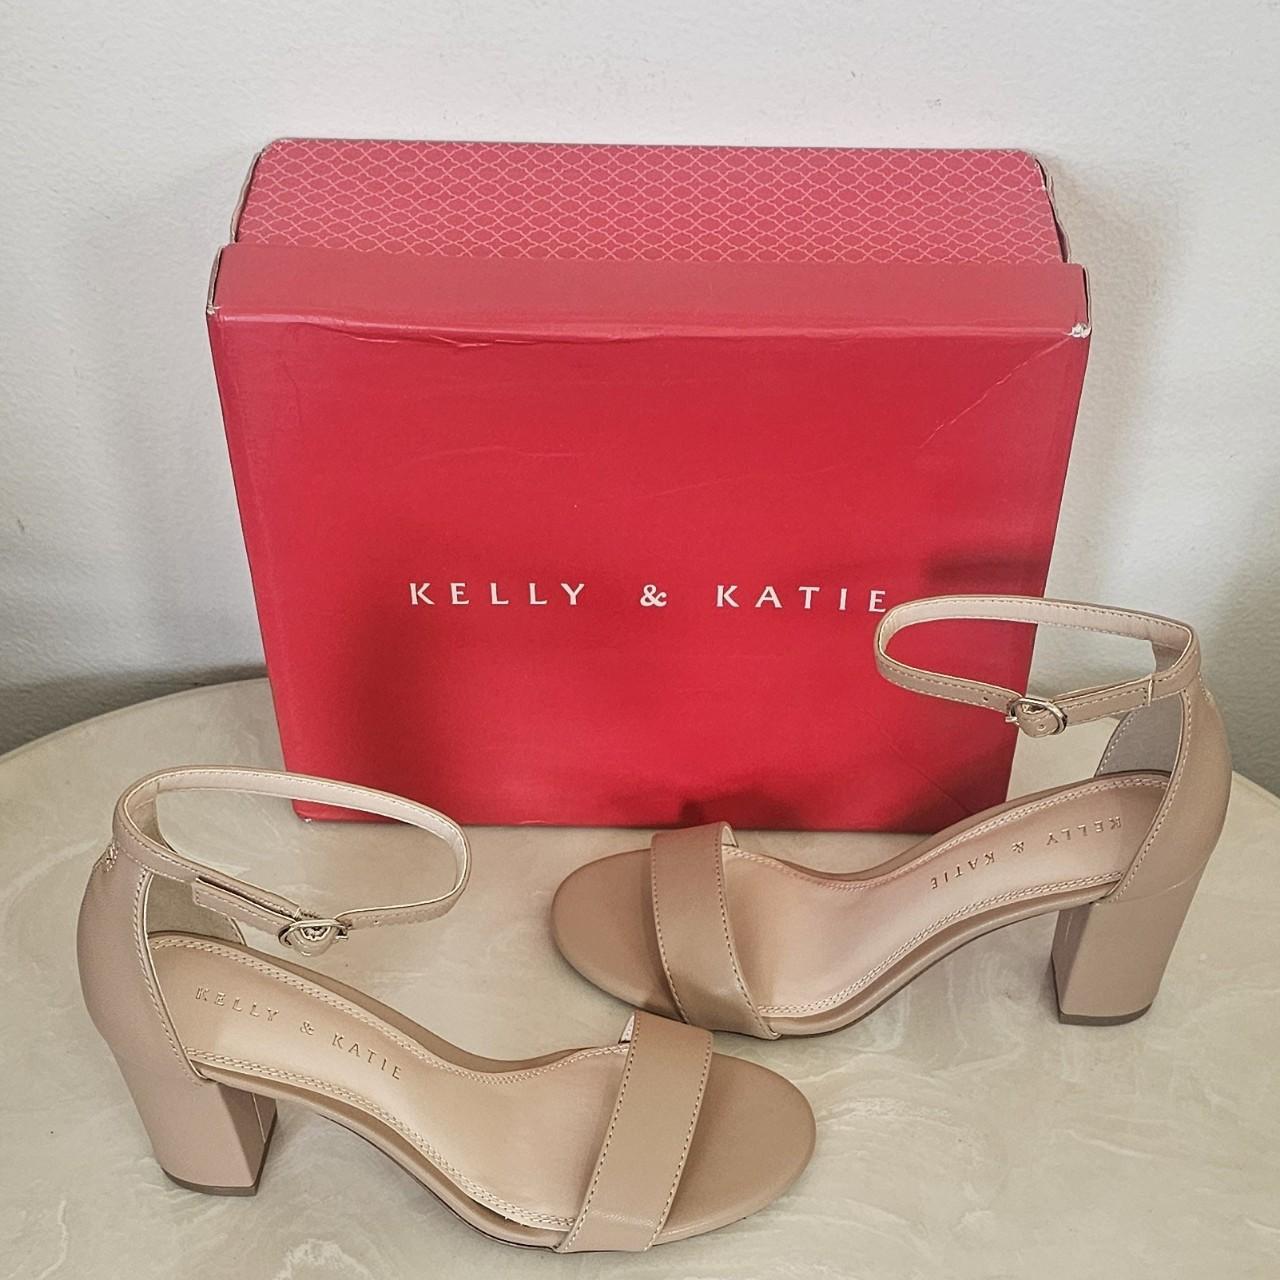 Kelly & Katie Caital Sandal | Kelly & katie, Sandals, Heels